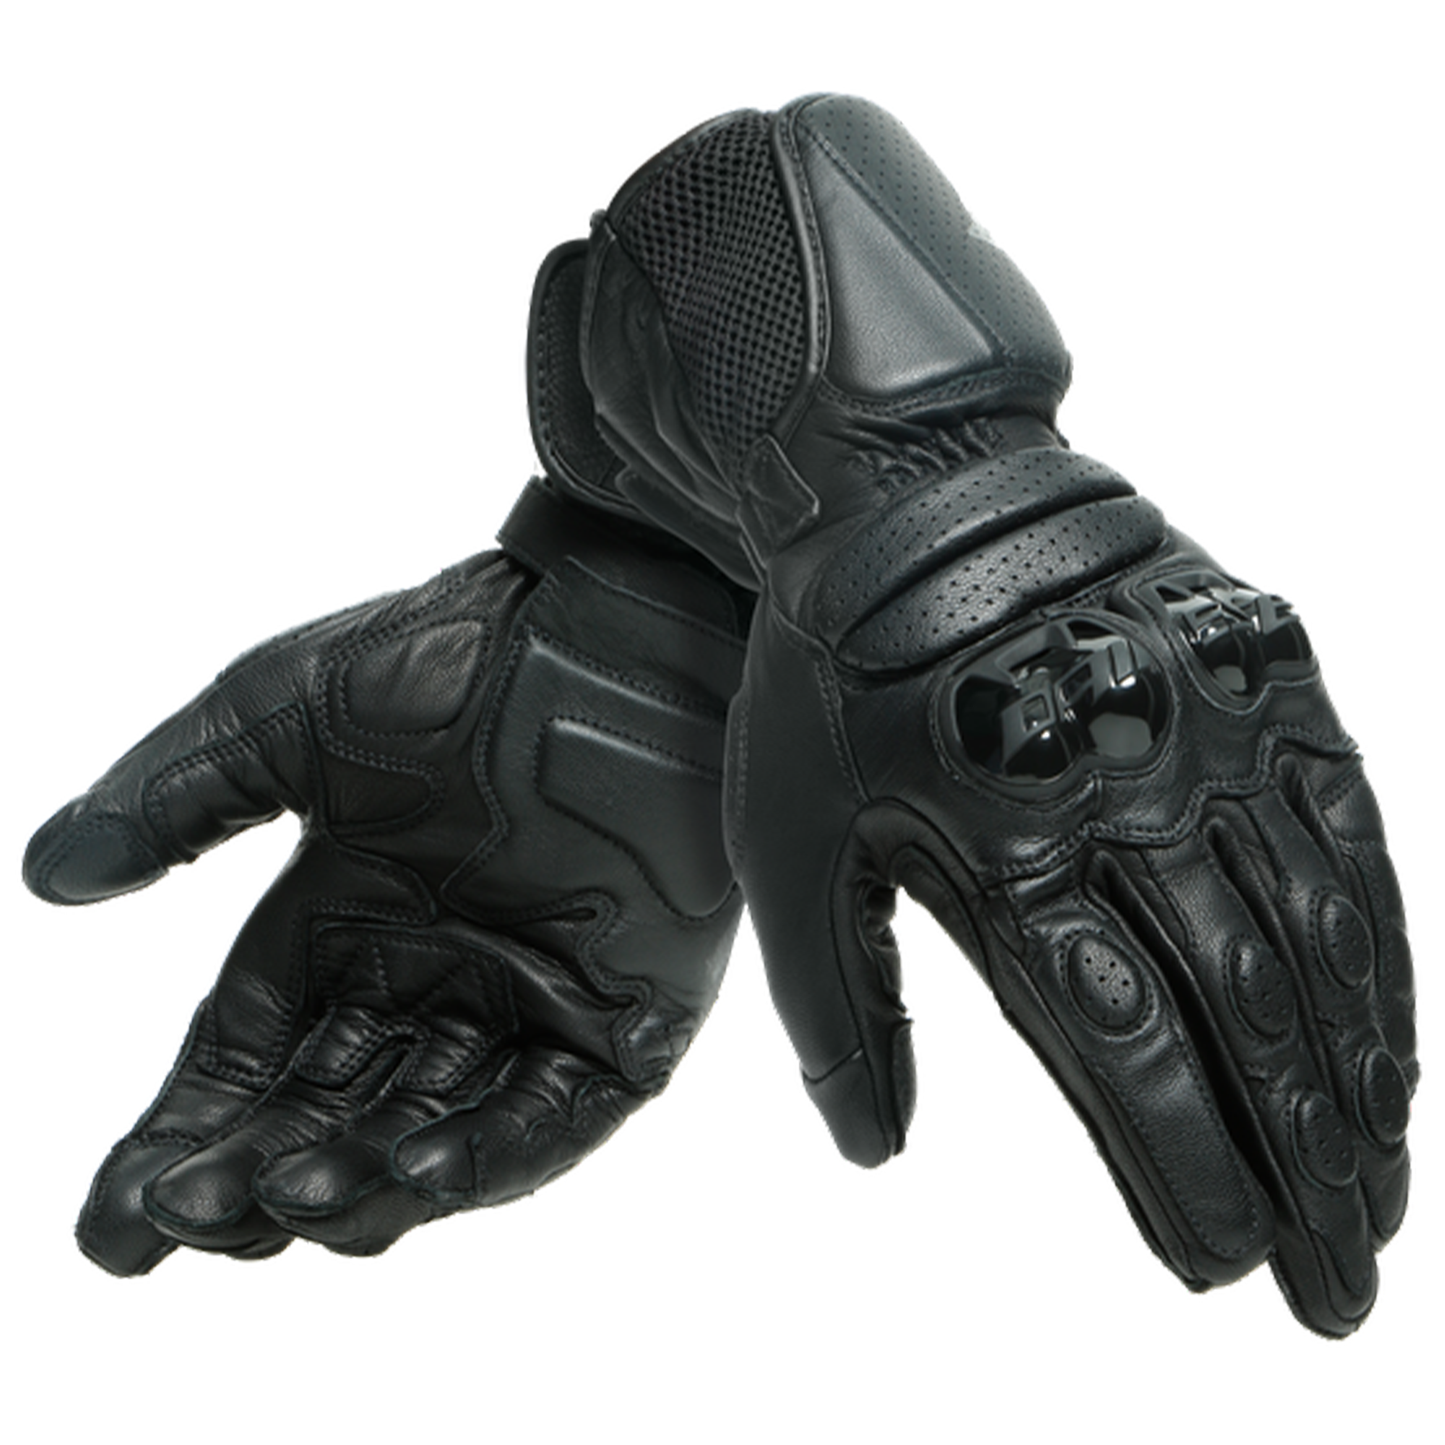 Dainese Impeto Gloves - Black/Black